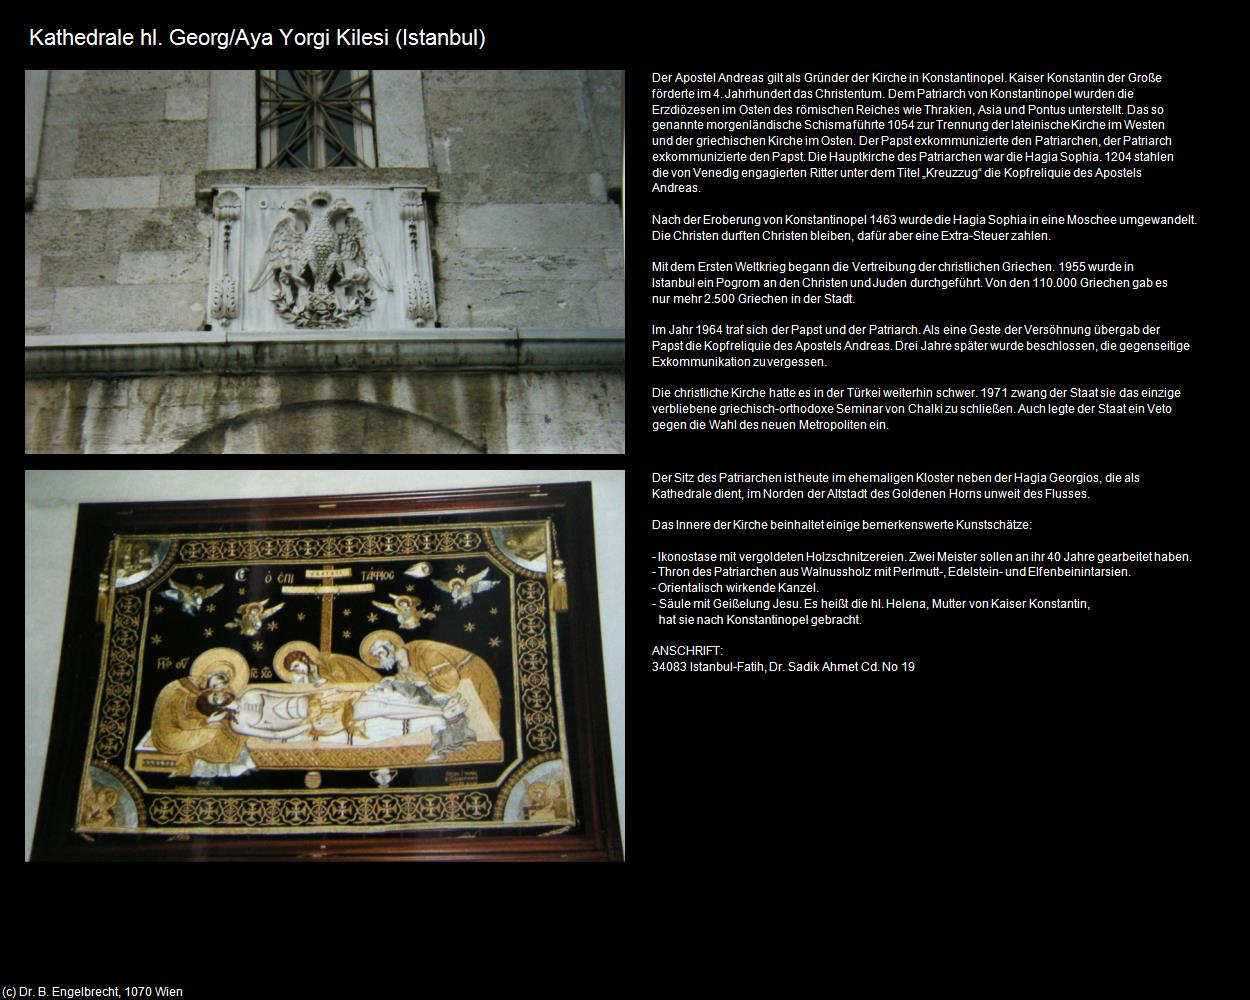 Kathedrale hl. Georg/Aya Yorgi Kilesi (Istanbul) in TÜRKEI